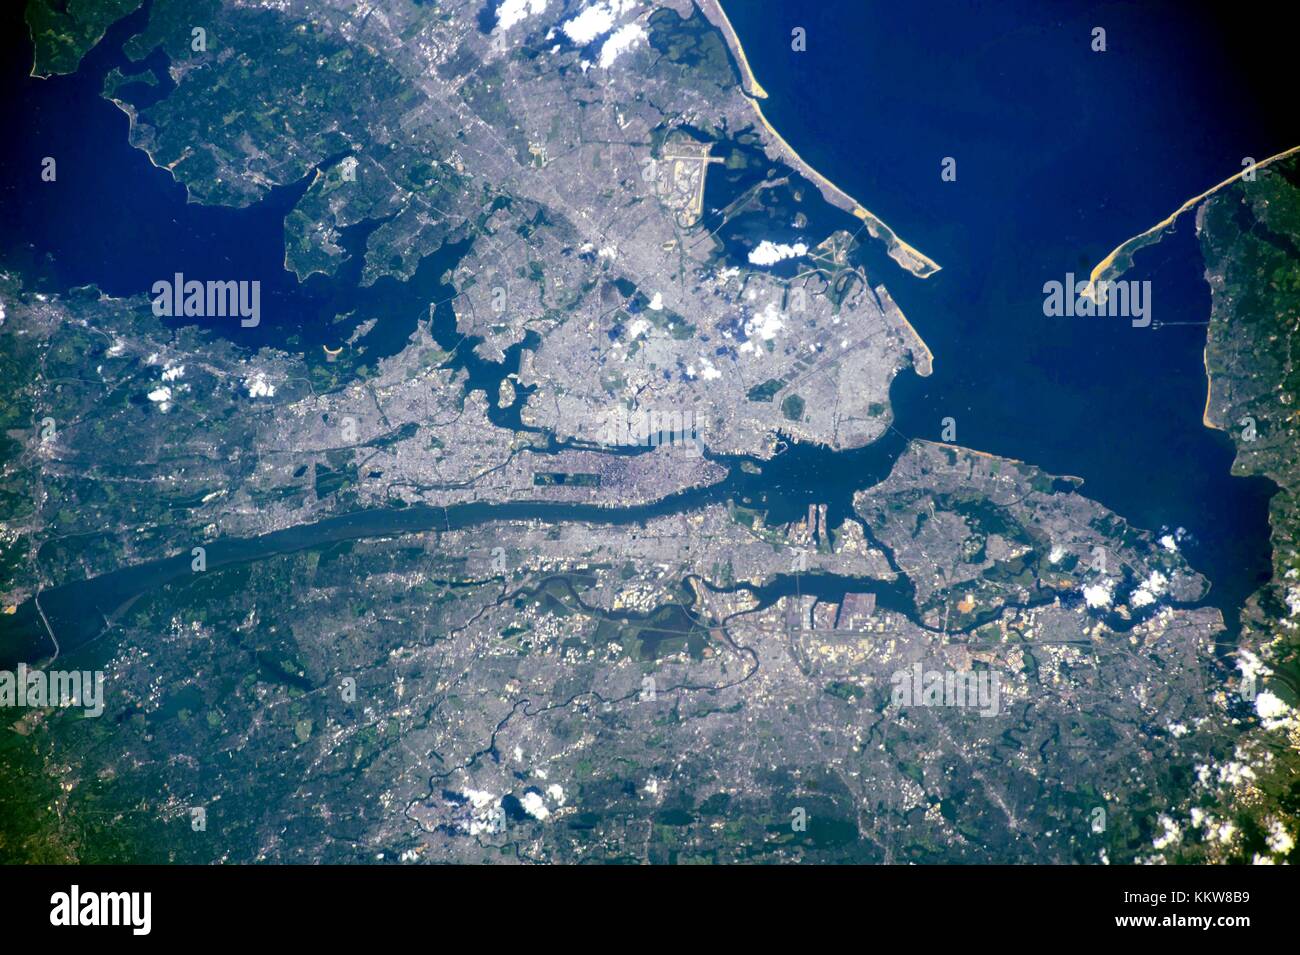 Vue de jour de la ville de New york et essayez-zone de l'état de la station spatiale internationale Vue depuis l'orbite de la terre. Banque D'Images